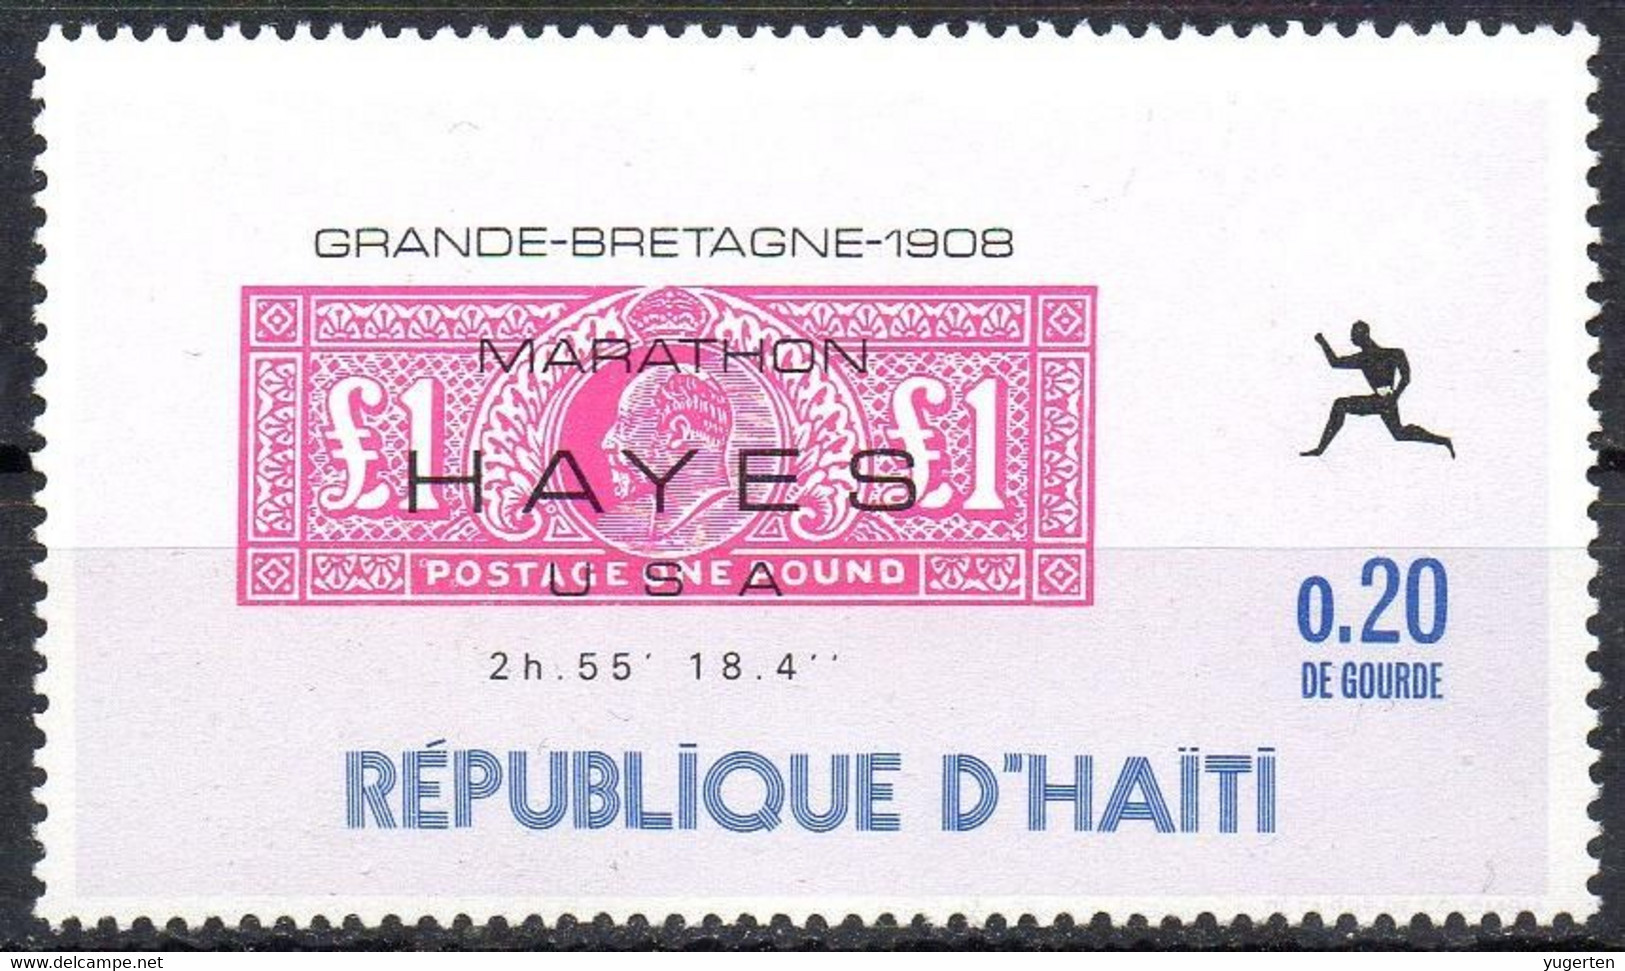 HAITI - 1969 - 1v - MNH** - Olympic Marathon Winners - Hayes - USA - Great Britain 1908 - Olympics Maratón Maratona - Ete 1908: Londres